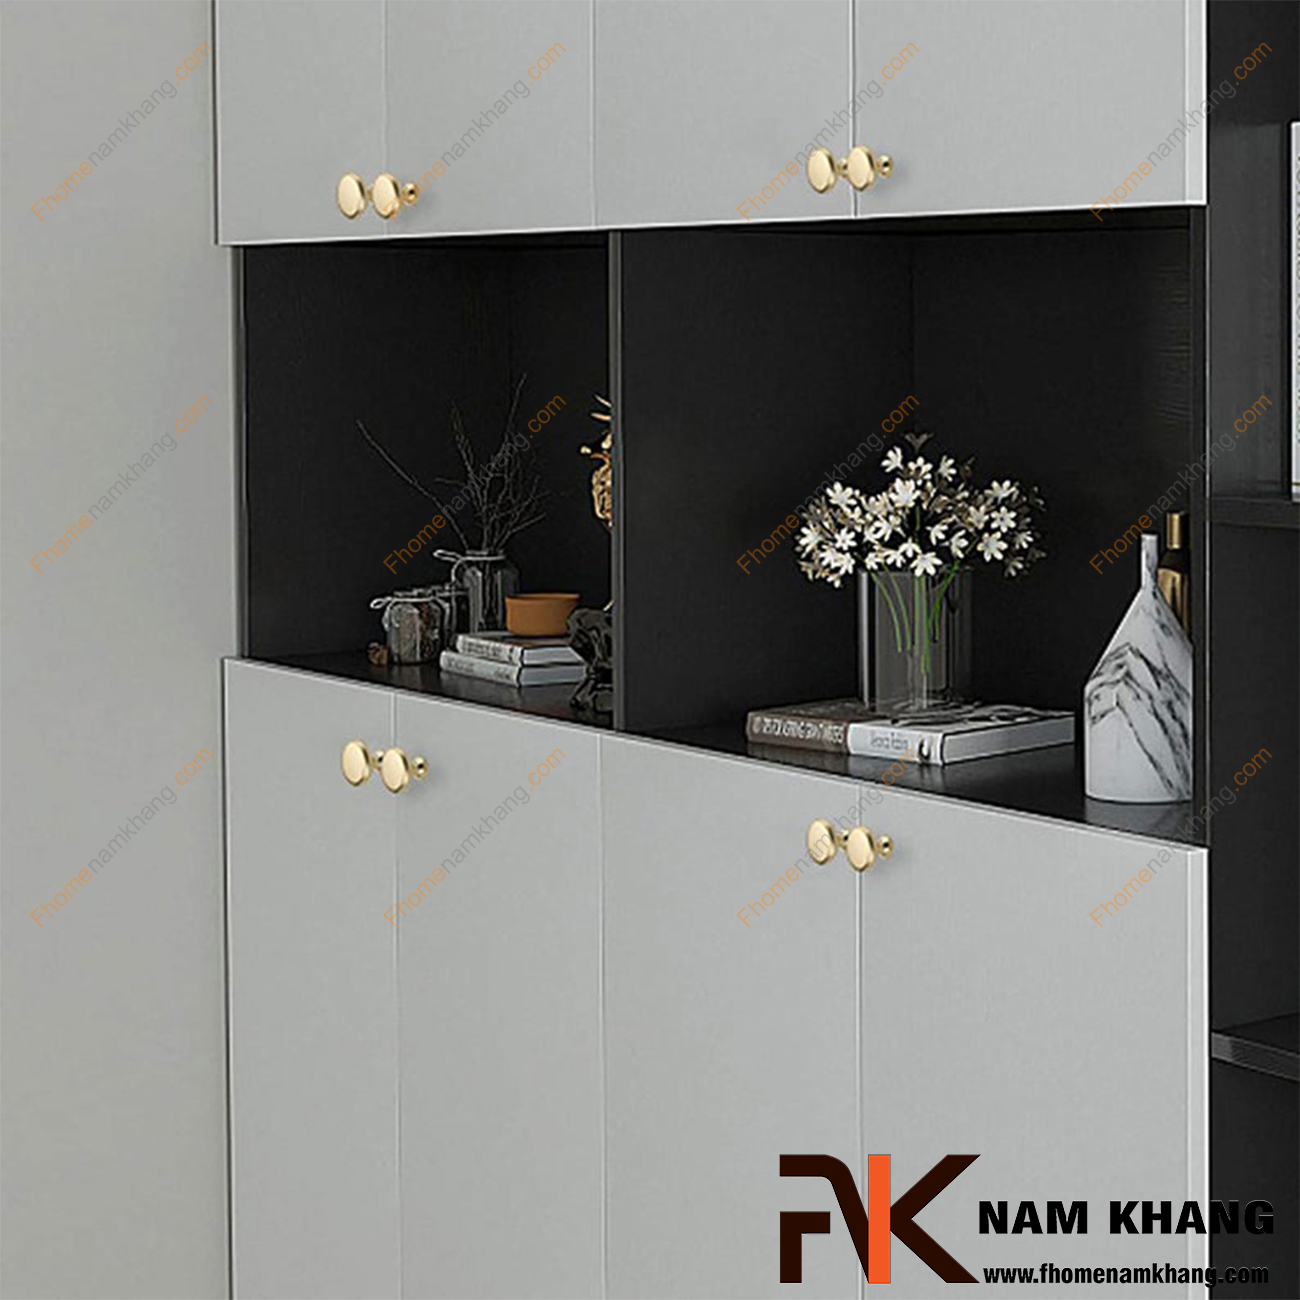 Núm cửa tủ dạng tròn vàng mờ NK211-VM - sản phẩm phụ kiện tủ nhỏ gọn thiết kế đơn giản bo tròn nhẹ nàng và sỡ hữu màu mạ mờ ấn tượng dễ dàng phối hợp.